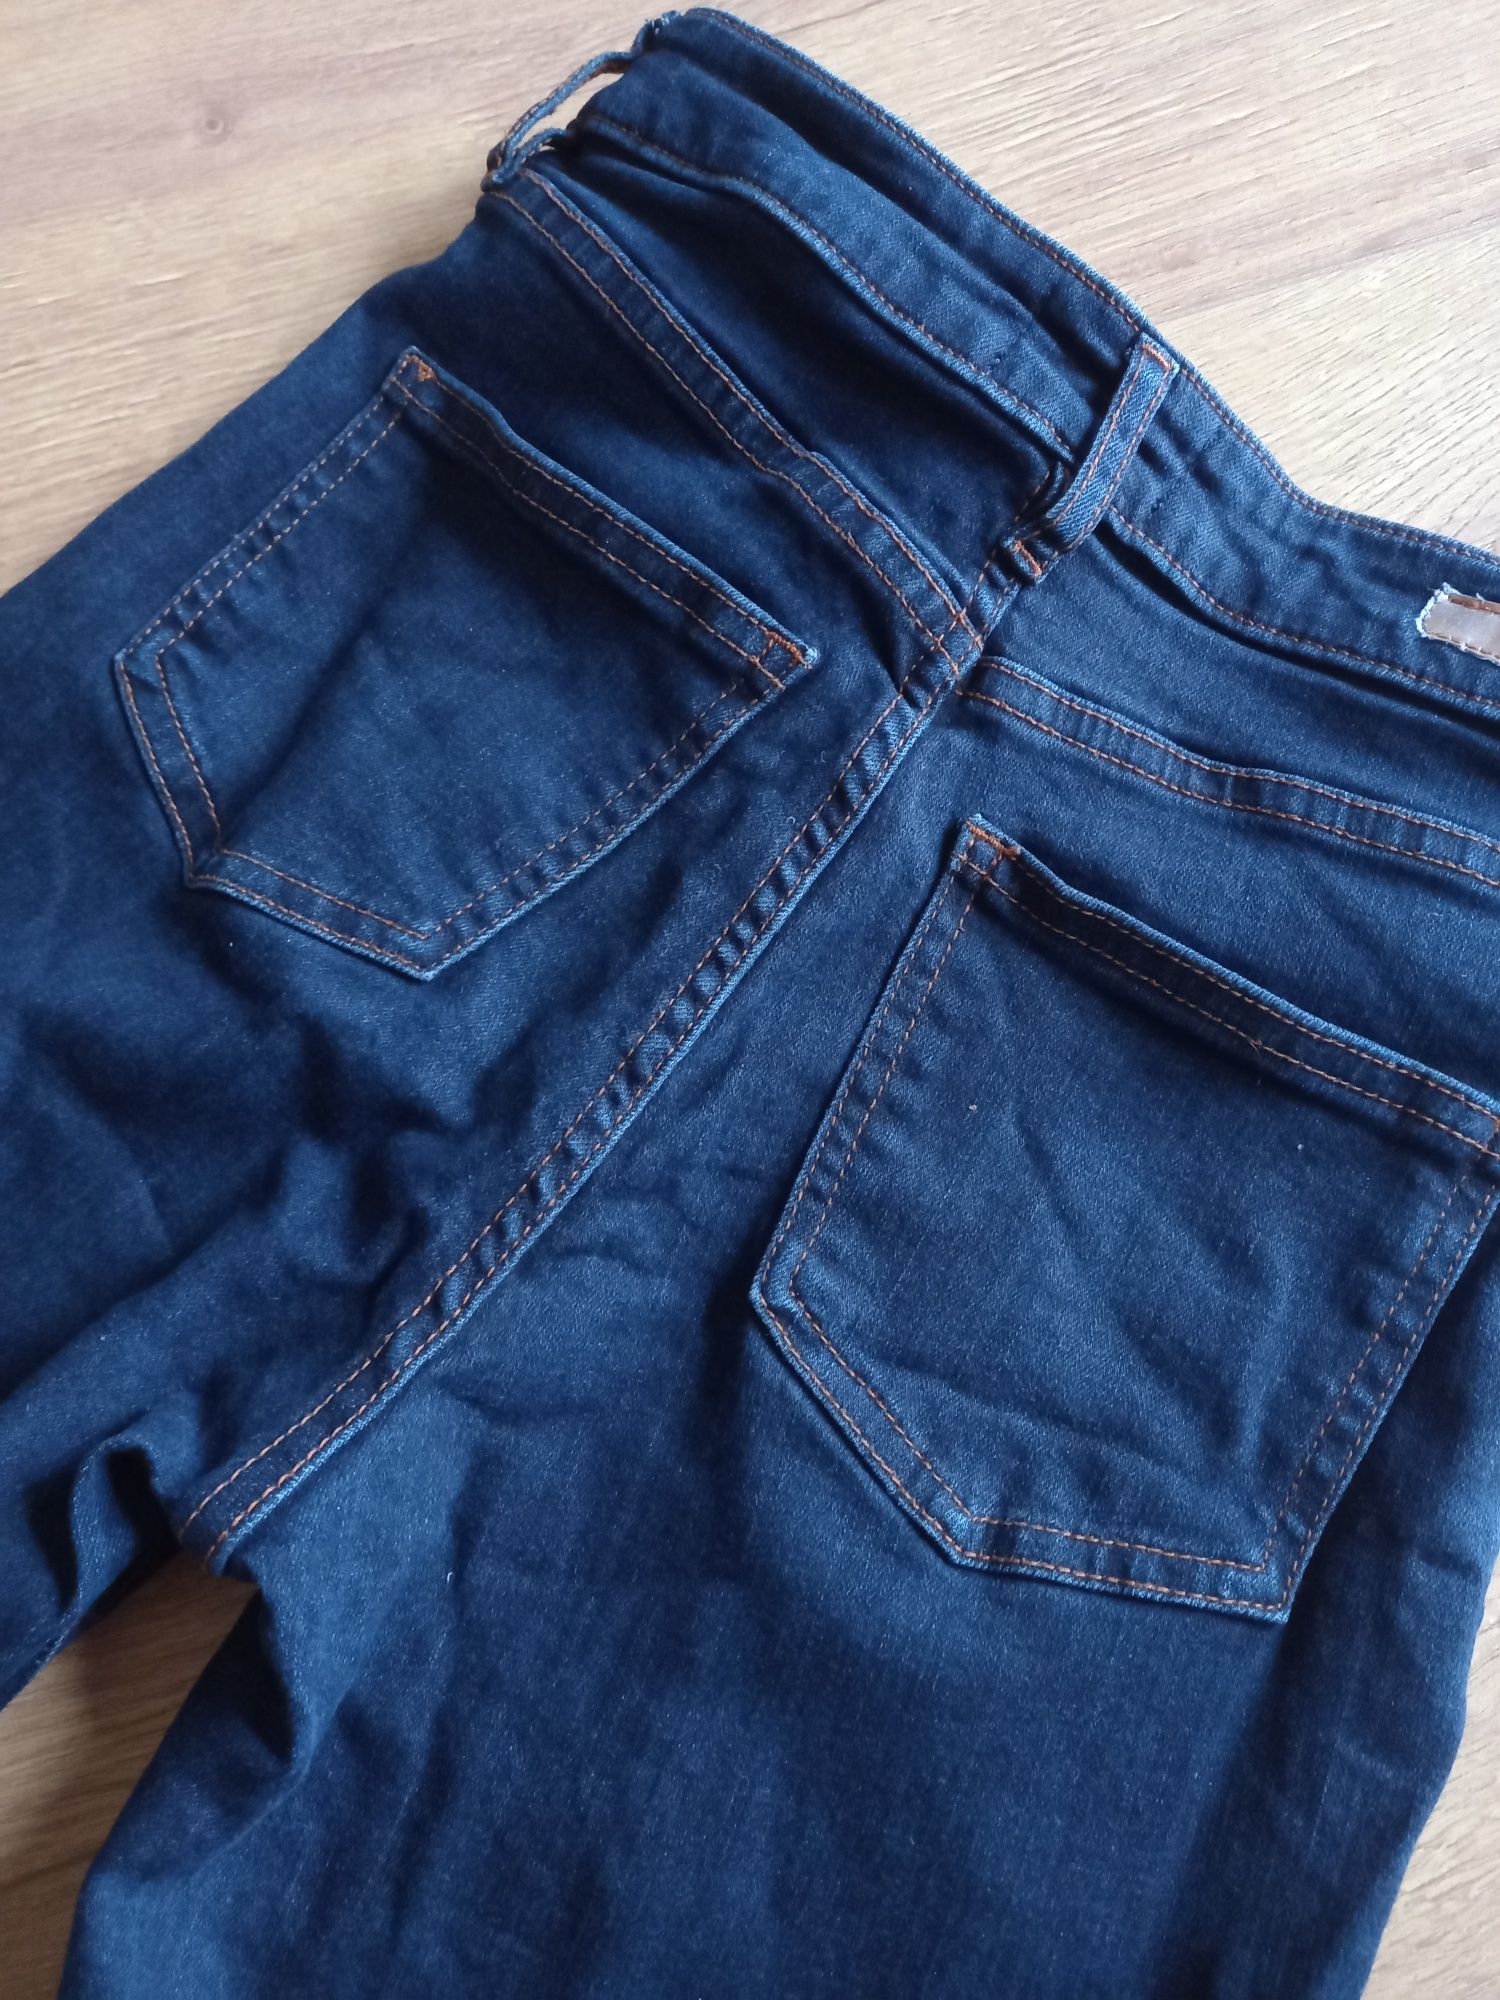 Spodnie jeansowe rozm 36